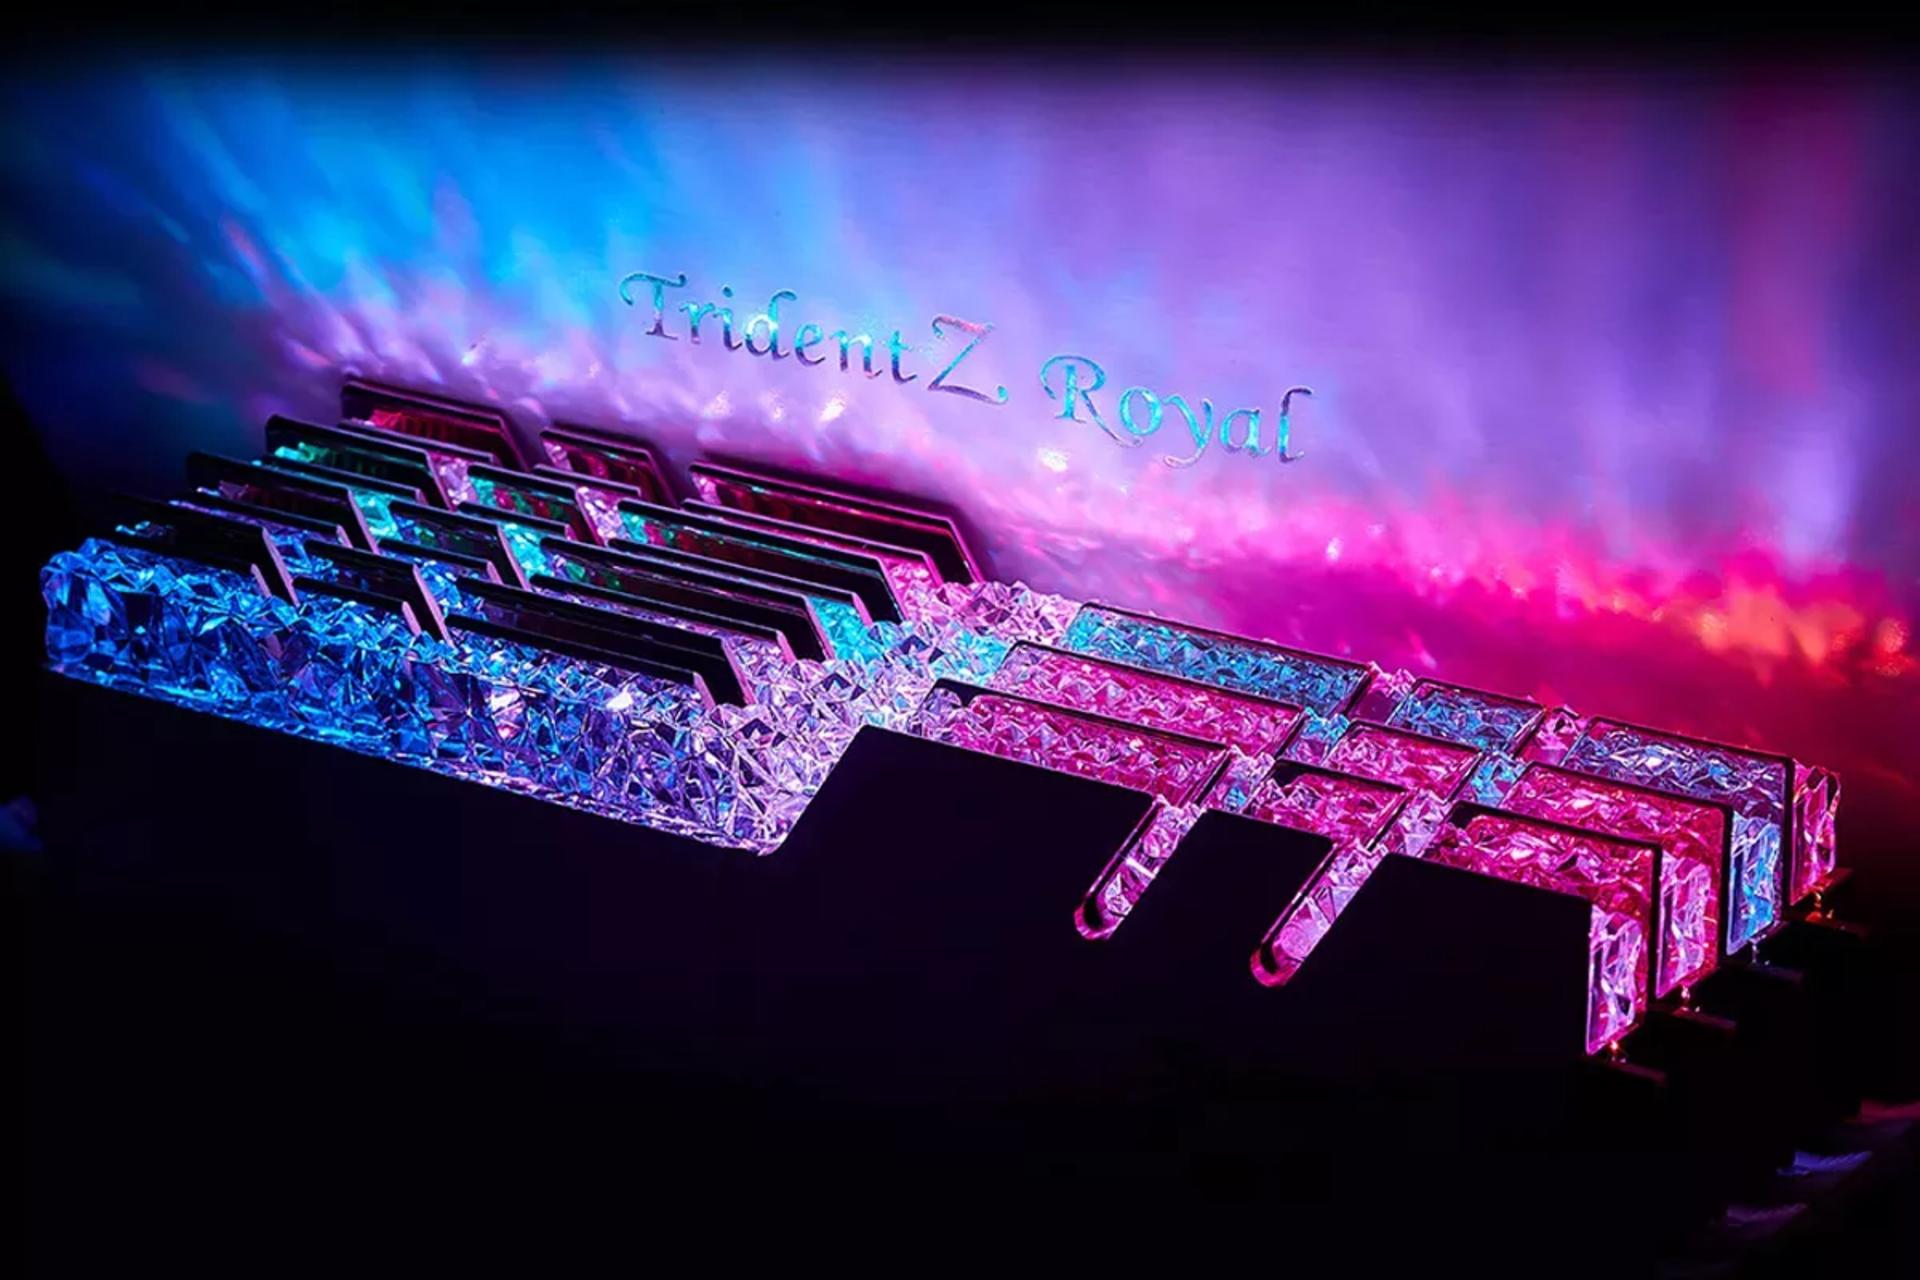 رم جی اسکیل Trident Z Royal ظرفیت 32 گیگابایت (2x16) از نوع DDR4-3600